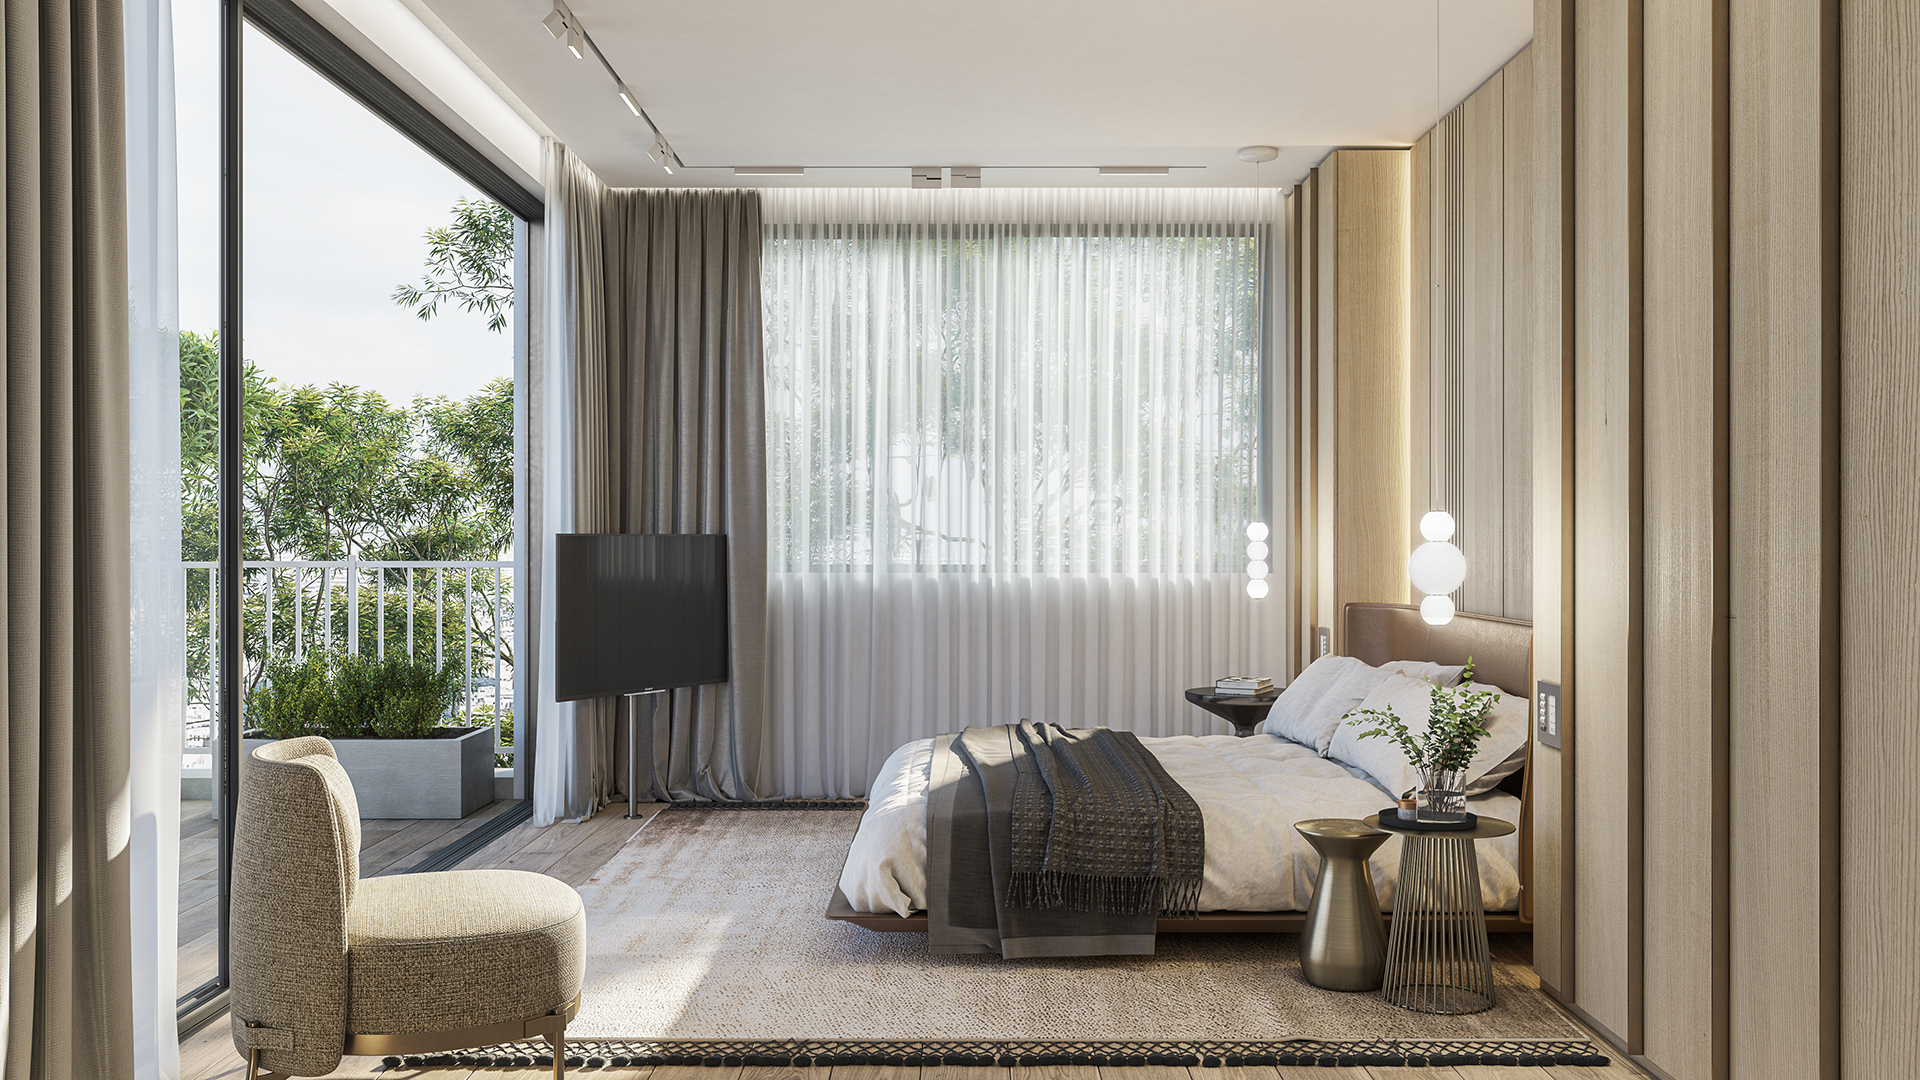 Maayan-Golan_Architectural-Visualization_interior-visualization_penthouse-bedroom_interior-design-by-sharon-maayan_04